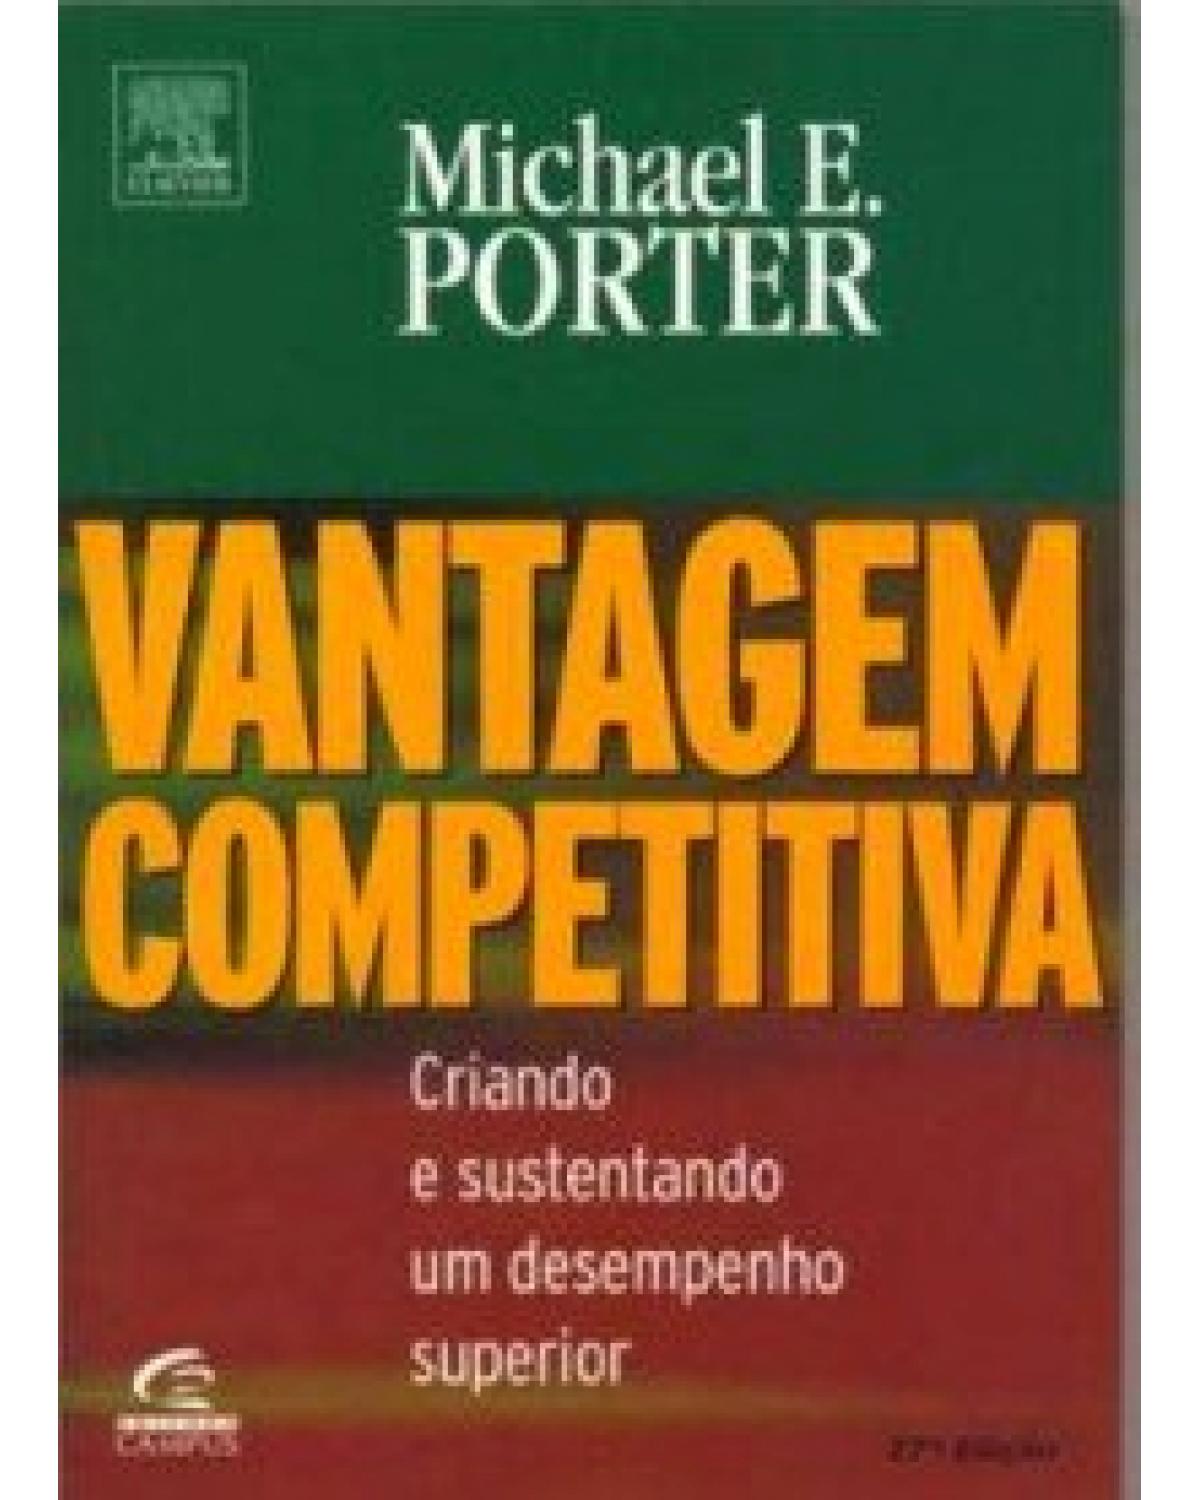 Vantagem competitiva - criando e sustentando um desempenho superior - 1ª Edição | 1989